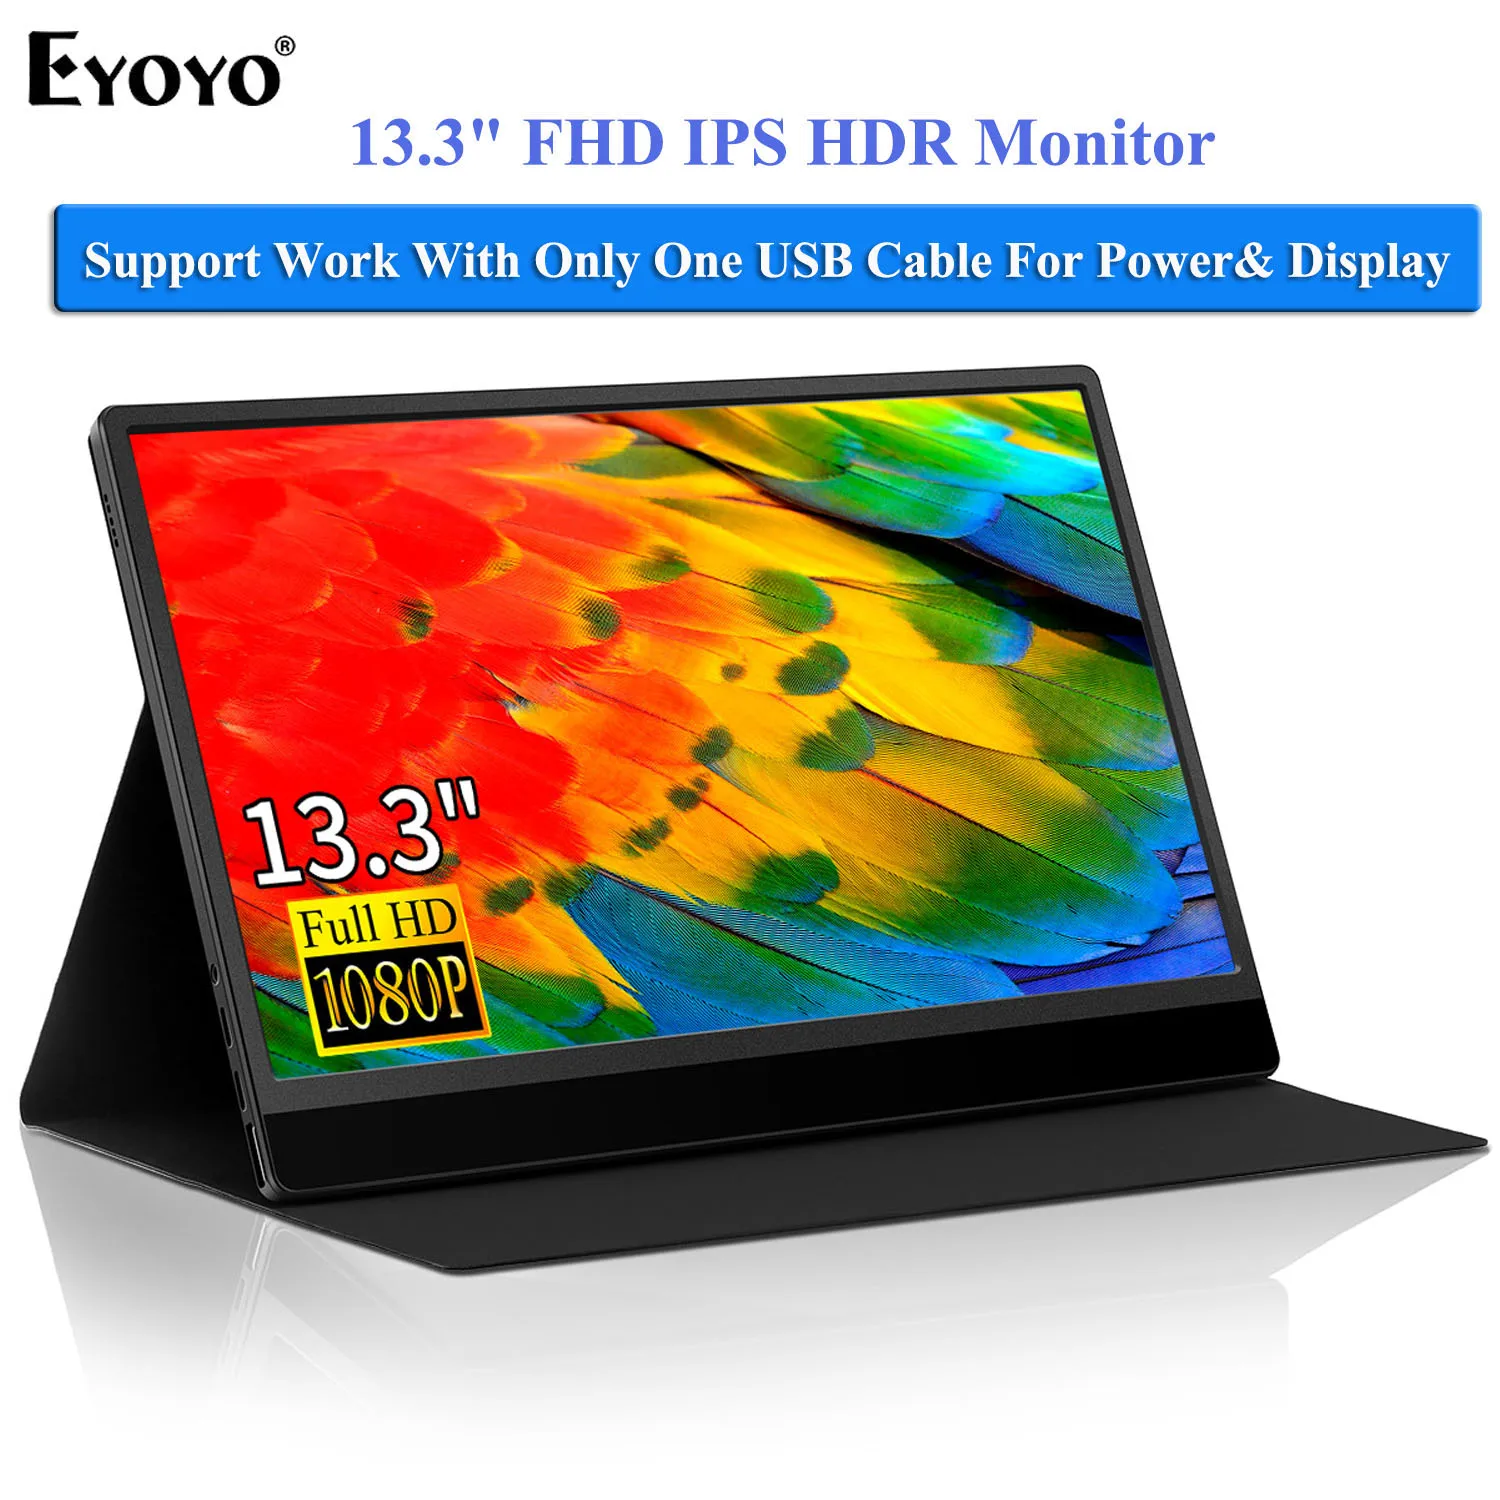 구매 Eyoyo-EM13R IPS HDR 휴대용 게임 모니터, 13.3 1080P HDMI USB C 두 번째 노트북 PC LCD 화면 디스플레이 전화 Xbox 스위치 PS4